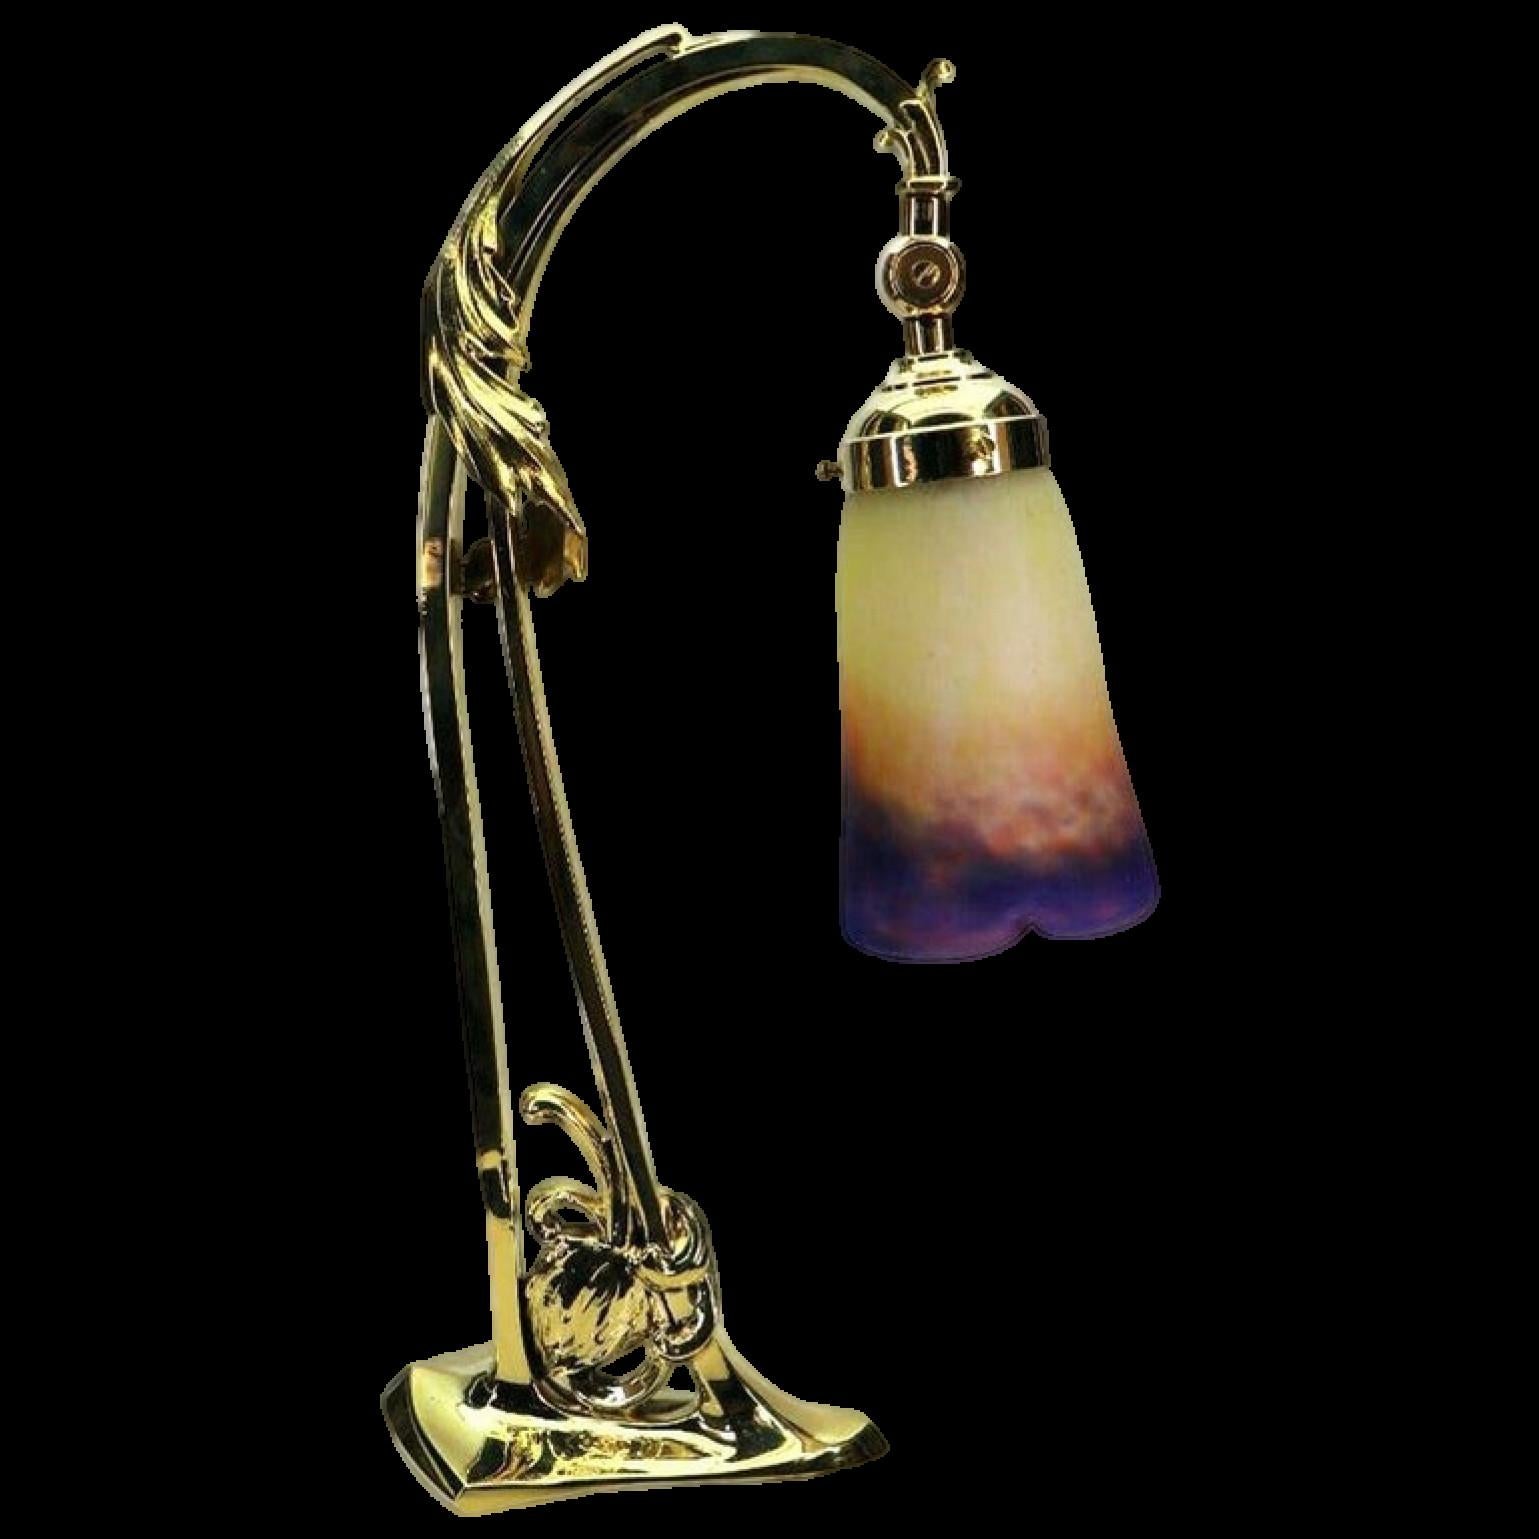 Lampe de table en laiton avec un design floral, abat-jour en verre pate de verre par Muller Frères, Luneville, 1910, gravure vierge dans la moitié supérieure, voir photo.
L'angle du parapluie peut être réglé.

Mesures : Hauteur 46 cm, hauteur du